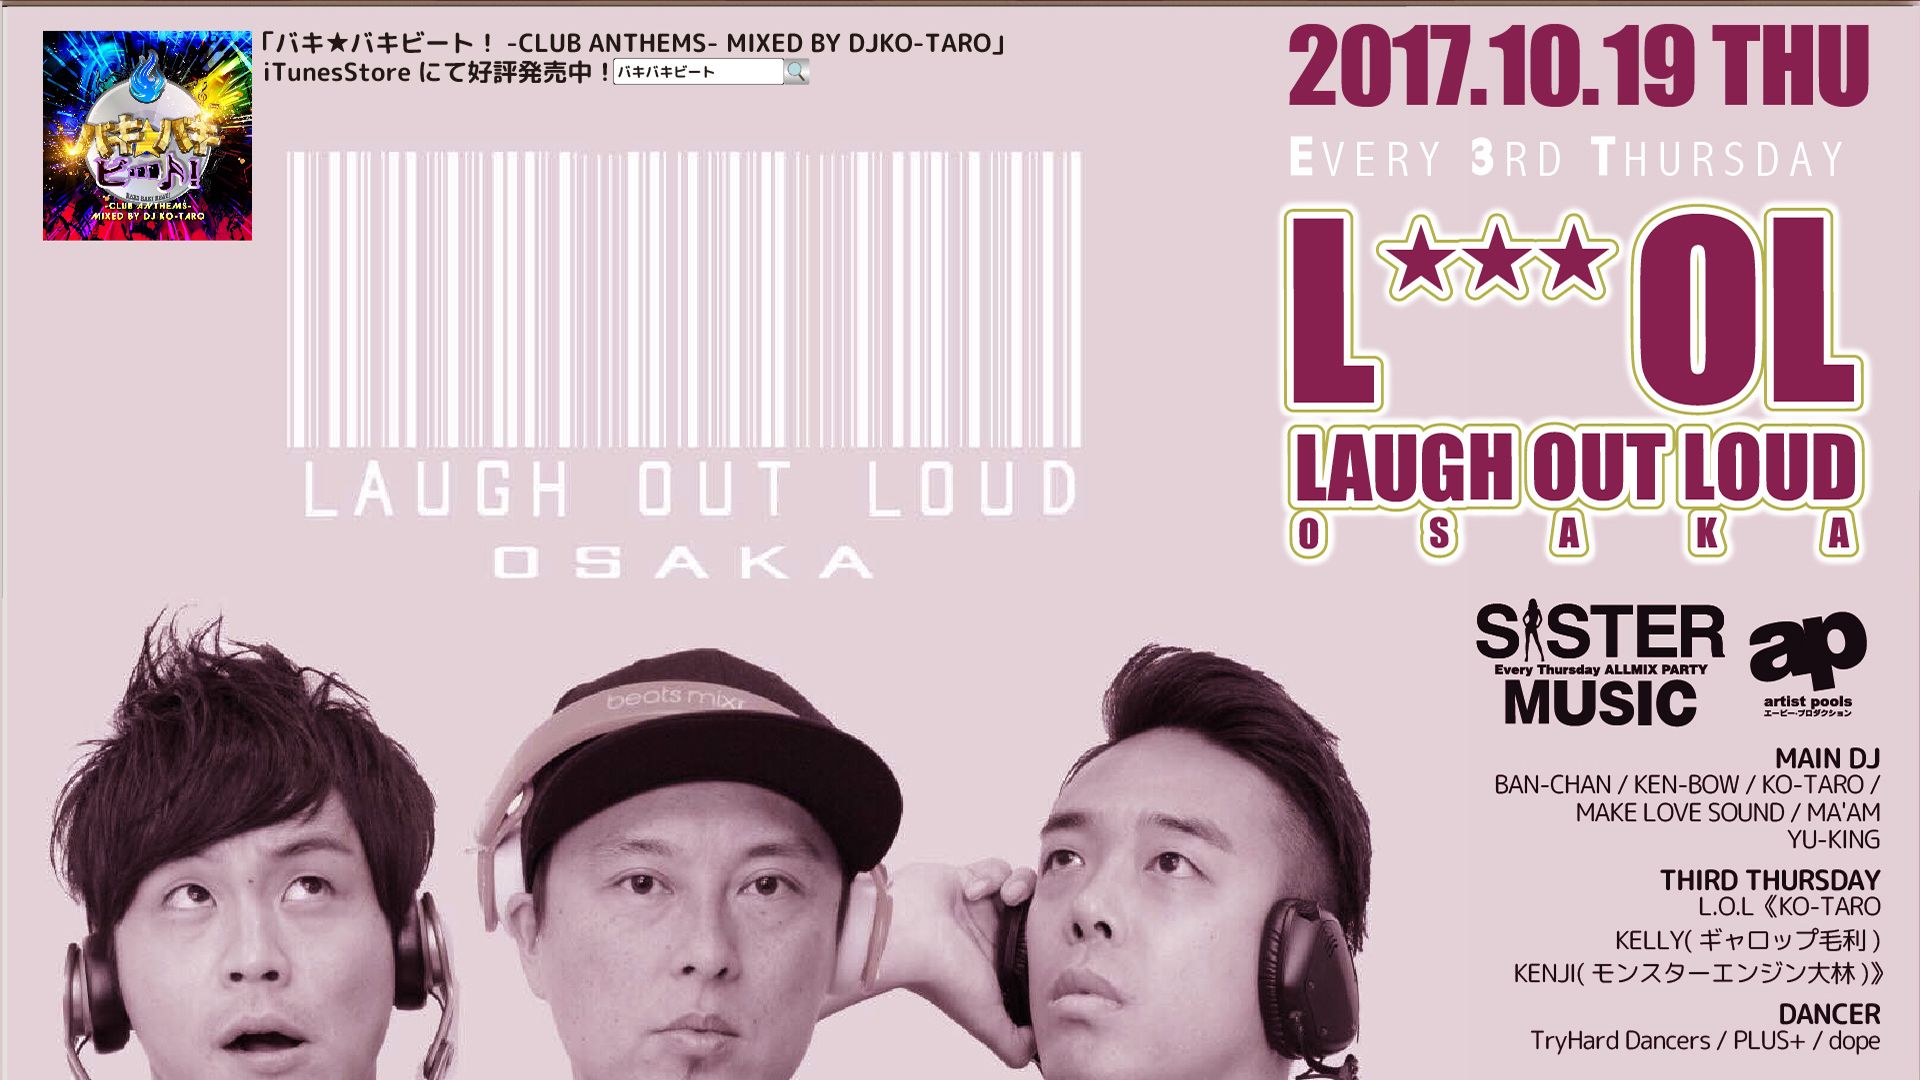 Laugu Out Loud Osaka / Sister Music